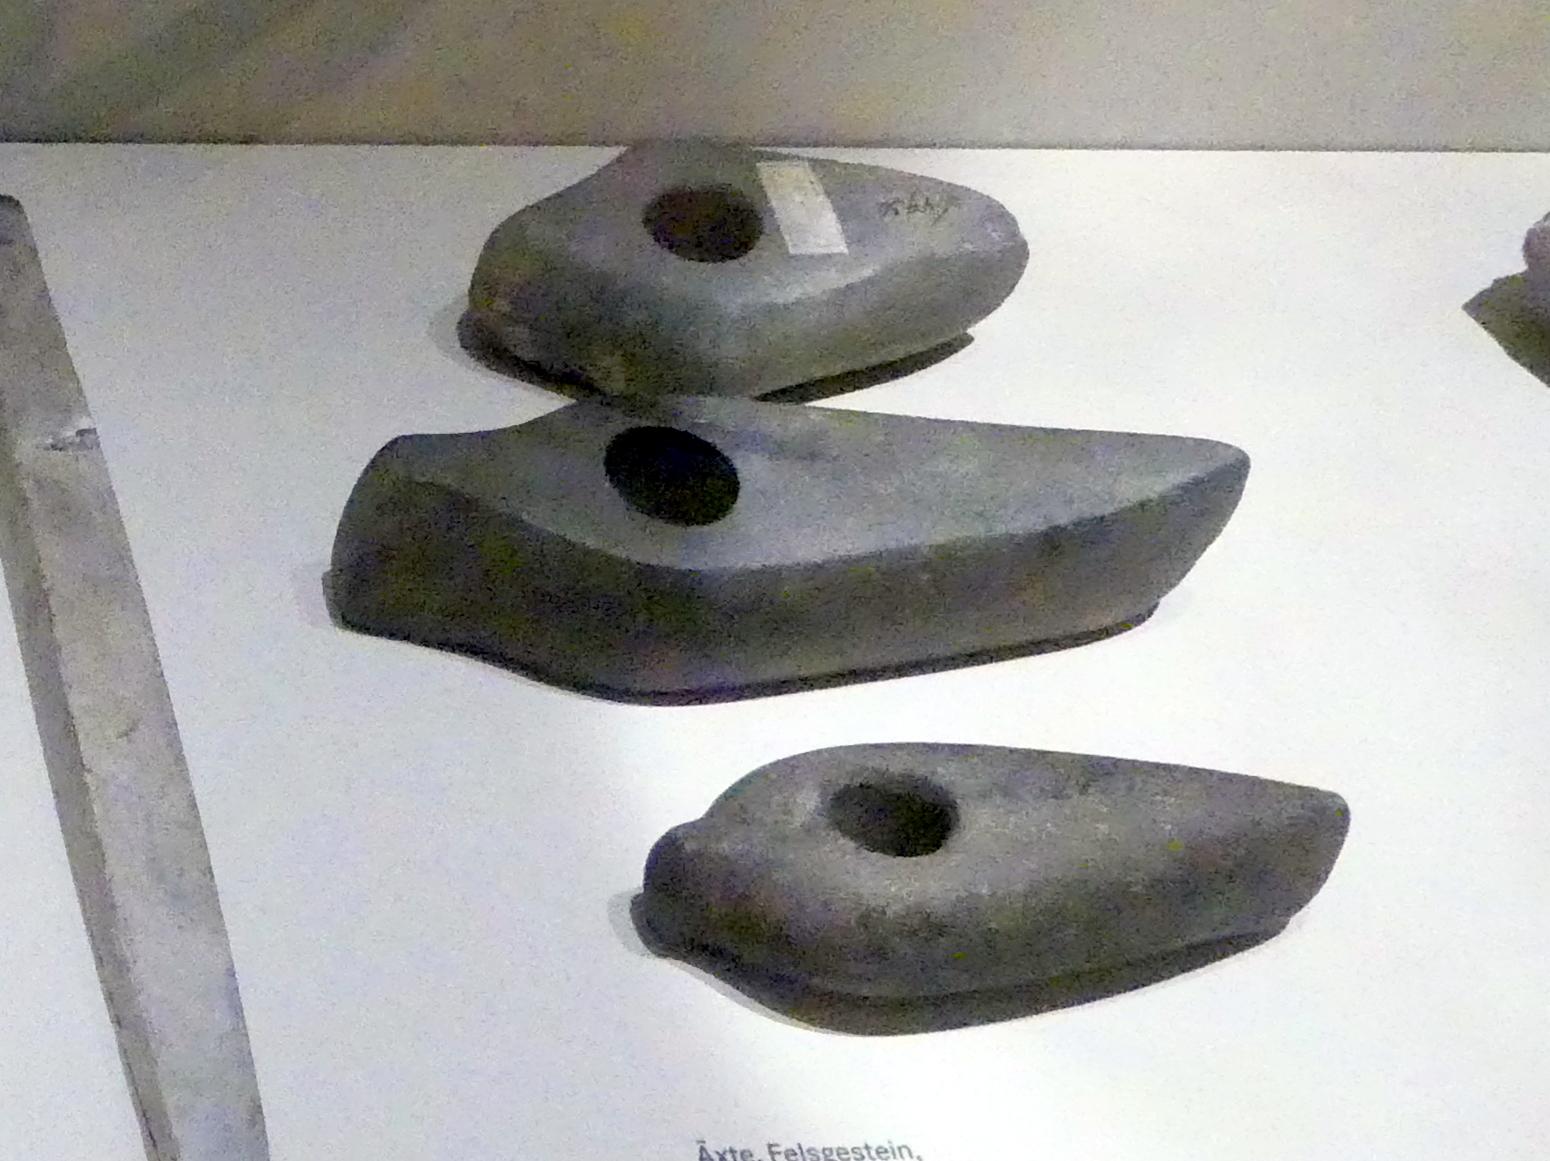 Axt mit Schaftloch, Nordisches Neolithikum, 4400 - 2350 v. Chr., 2800 - 2350 v. Chr., Bild 1/2